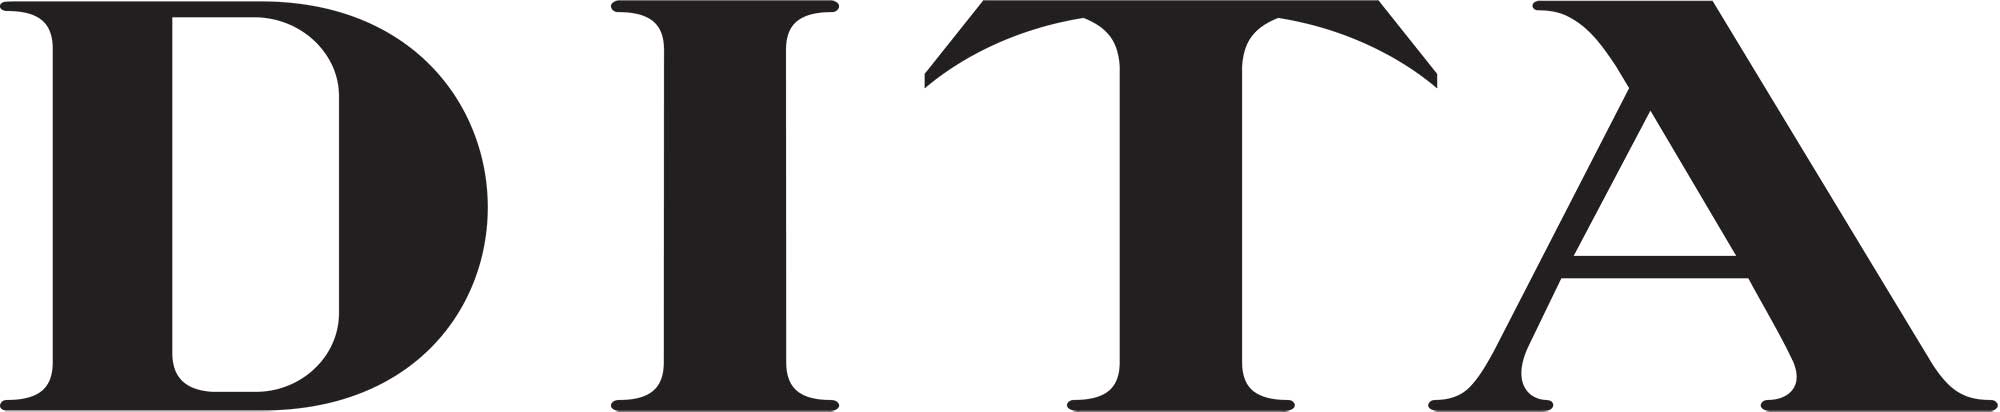 Dita Logo